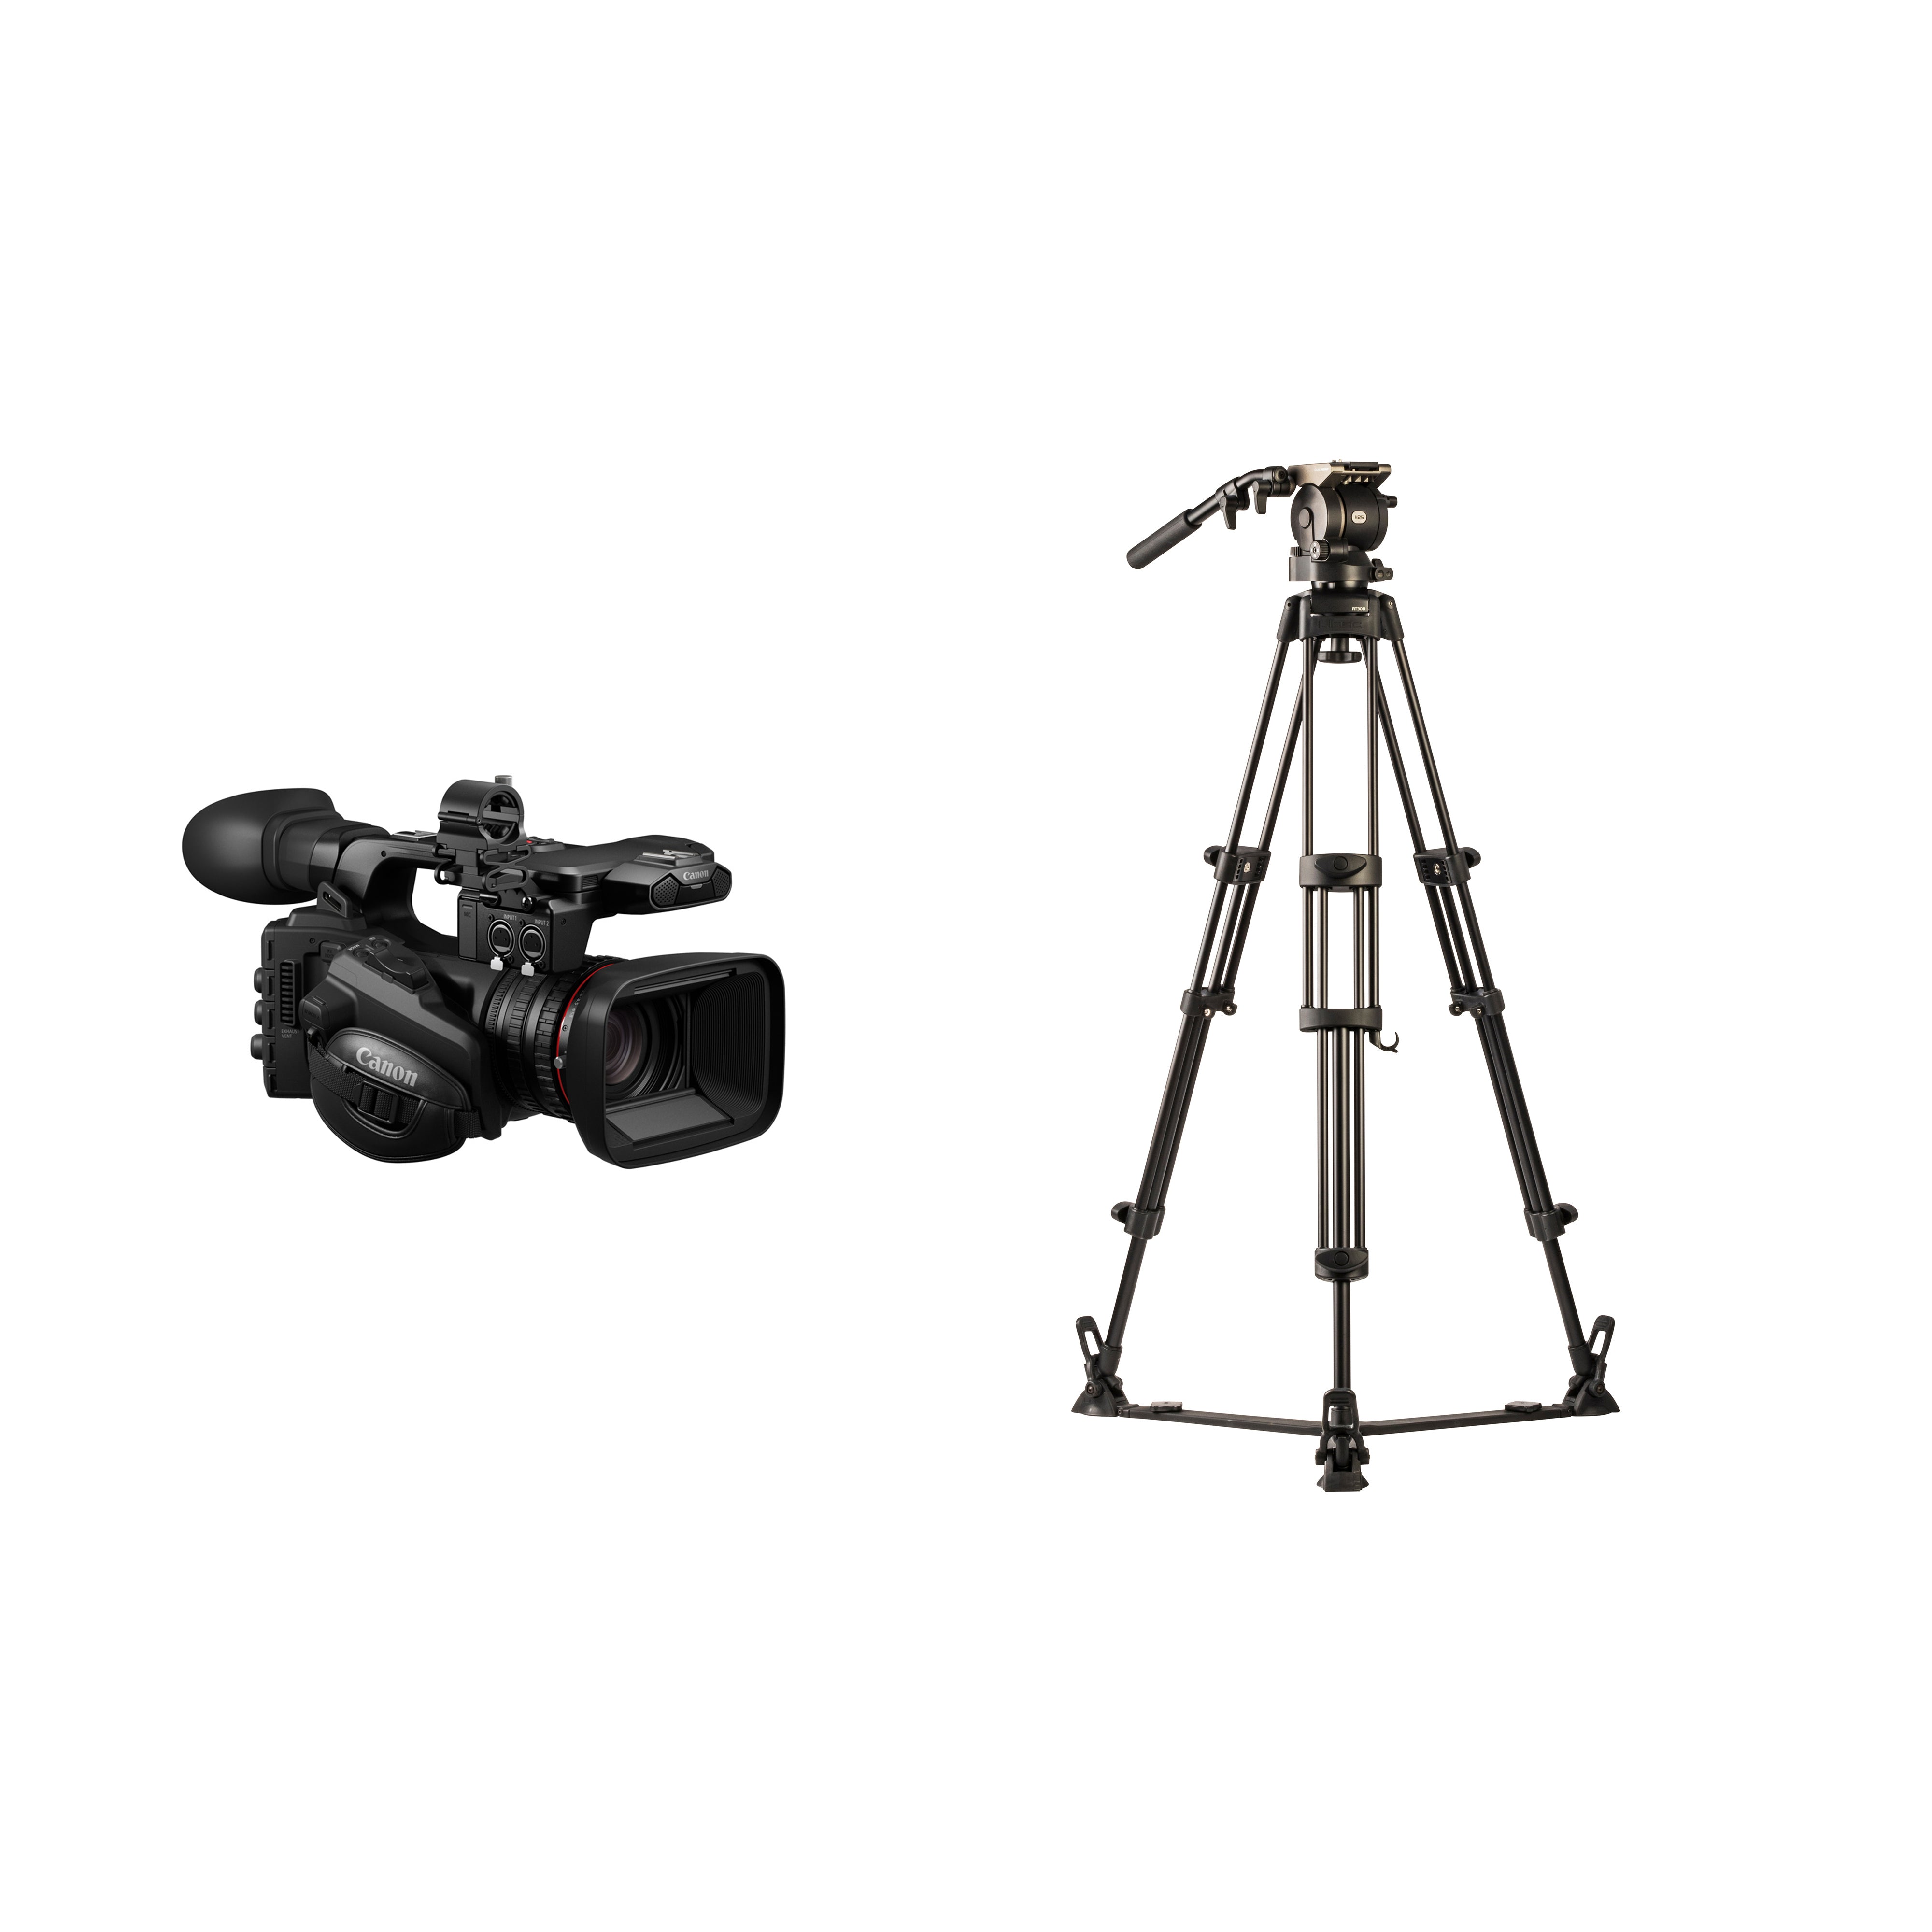 Canon x Libec x SYSTEM5 コラボセット XF605 HS-250(グランドスプレッダー)  業務用撮影・映像・音響・ドローン専門店 システムファイブ